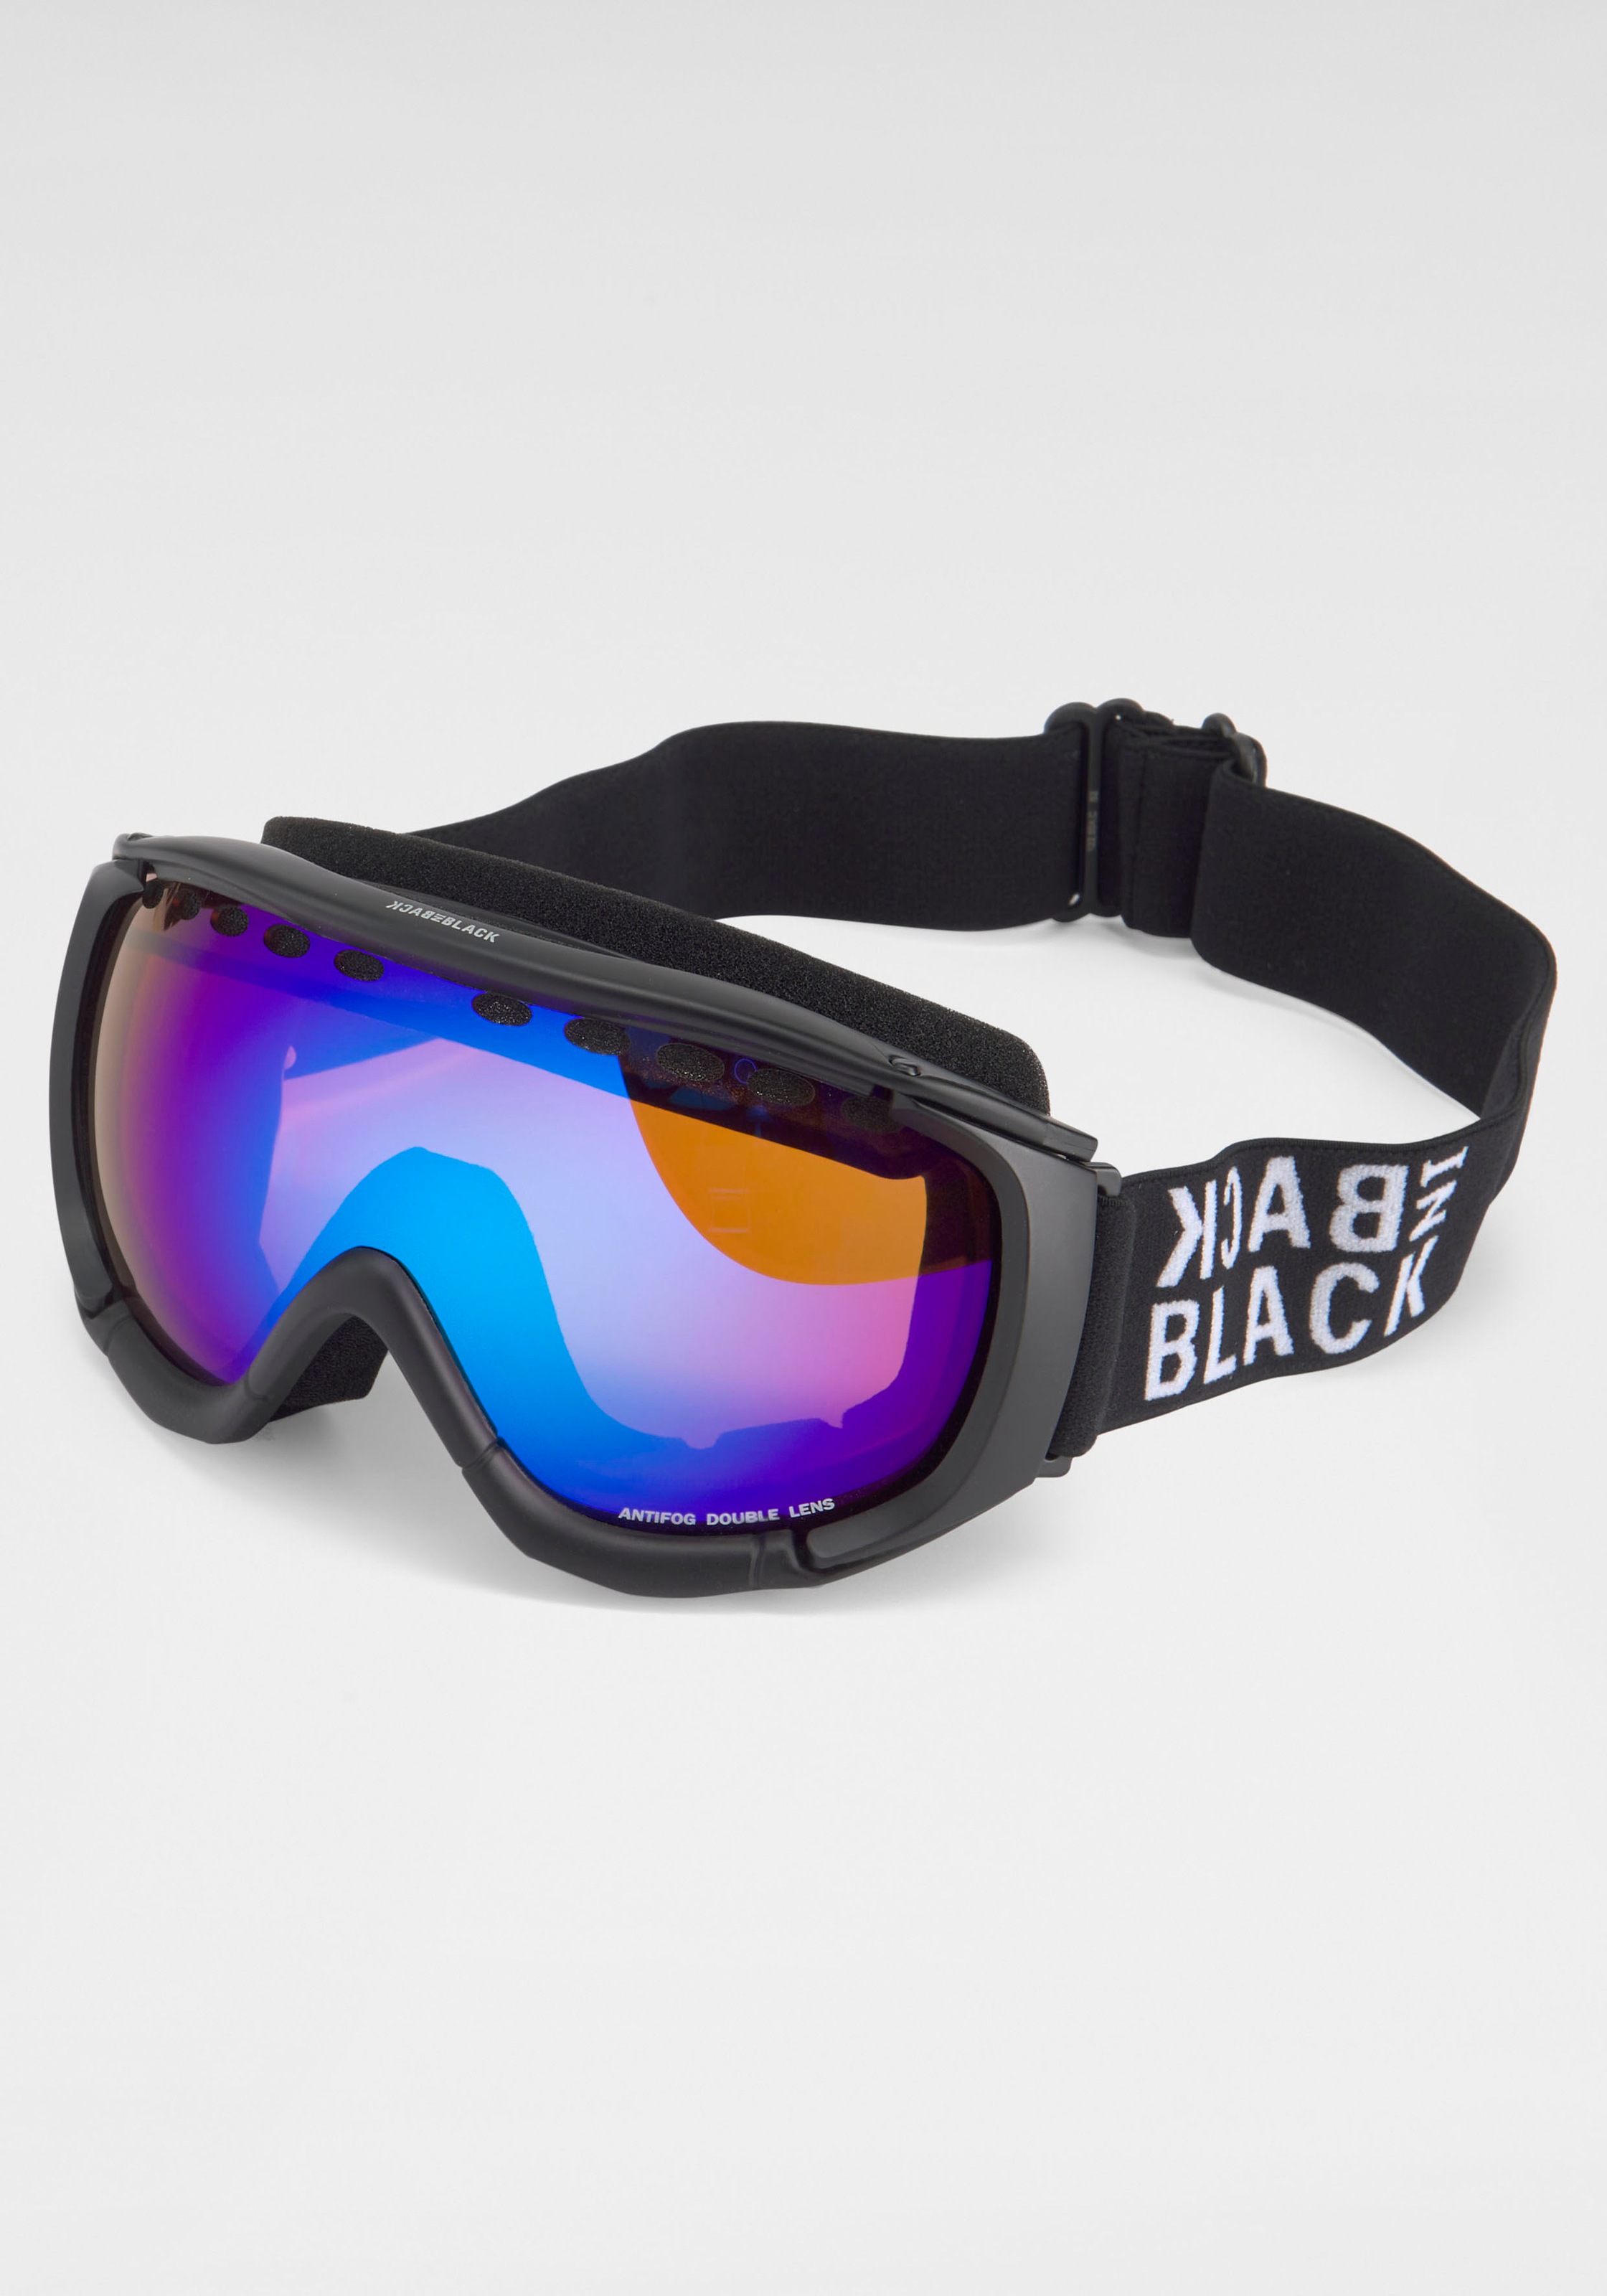 BACK IN Logo Eyewear auf BLACK dem Skibrille, Finde mit Band auf